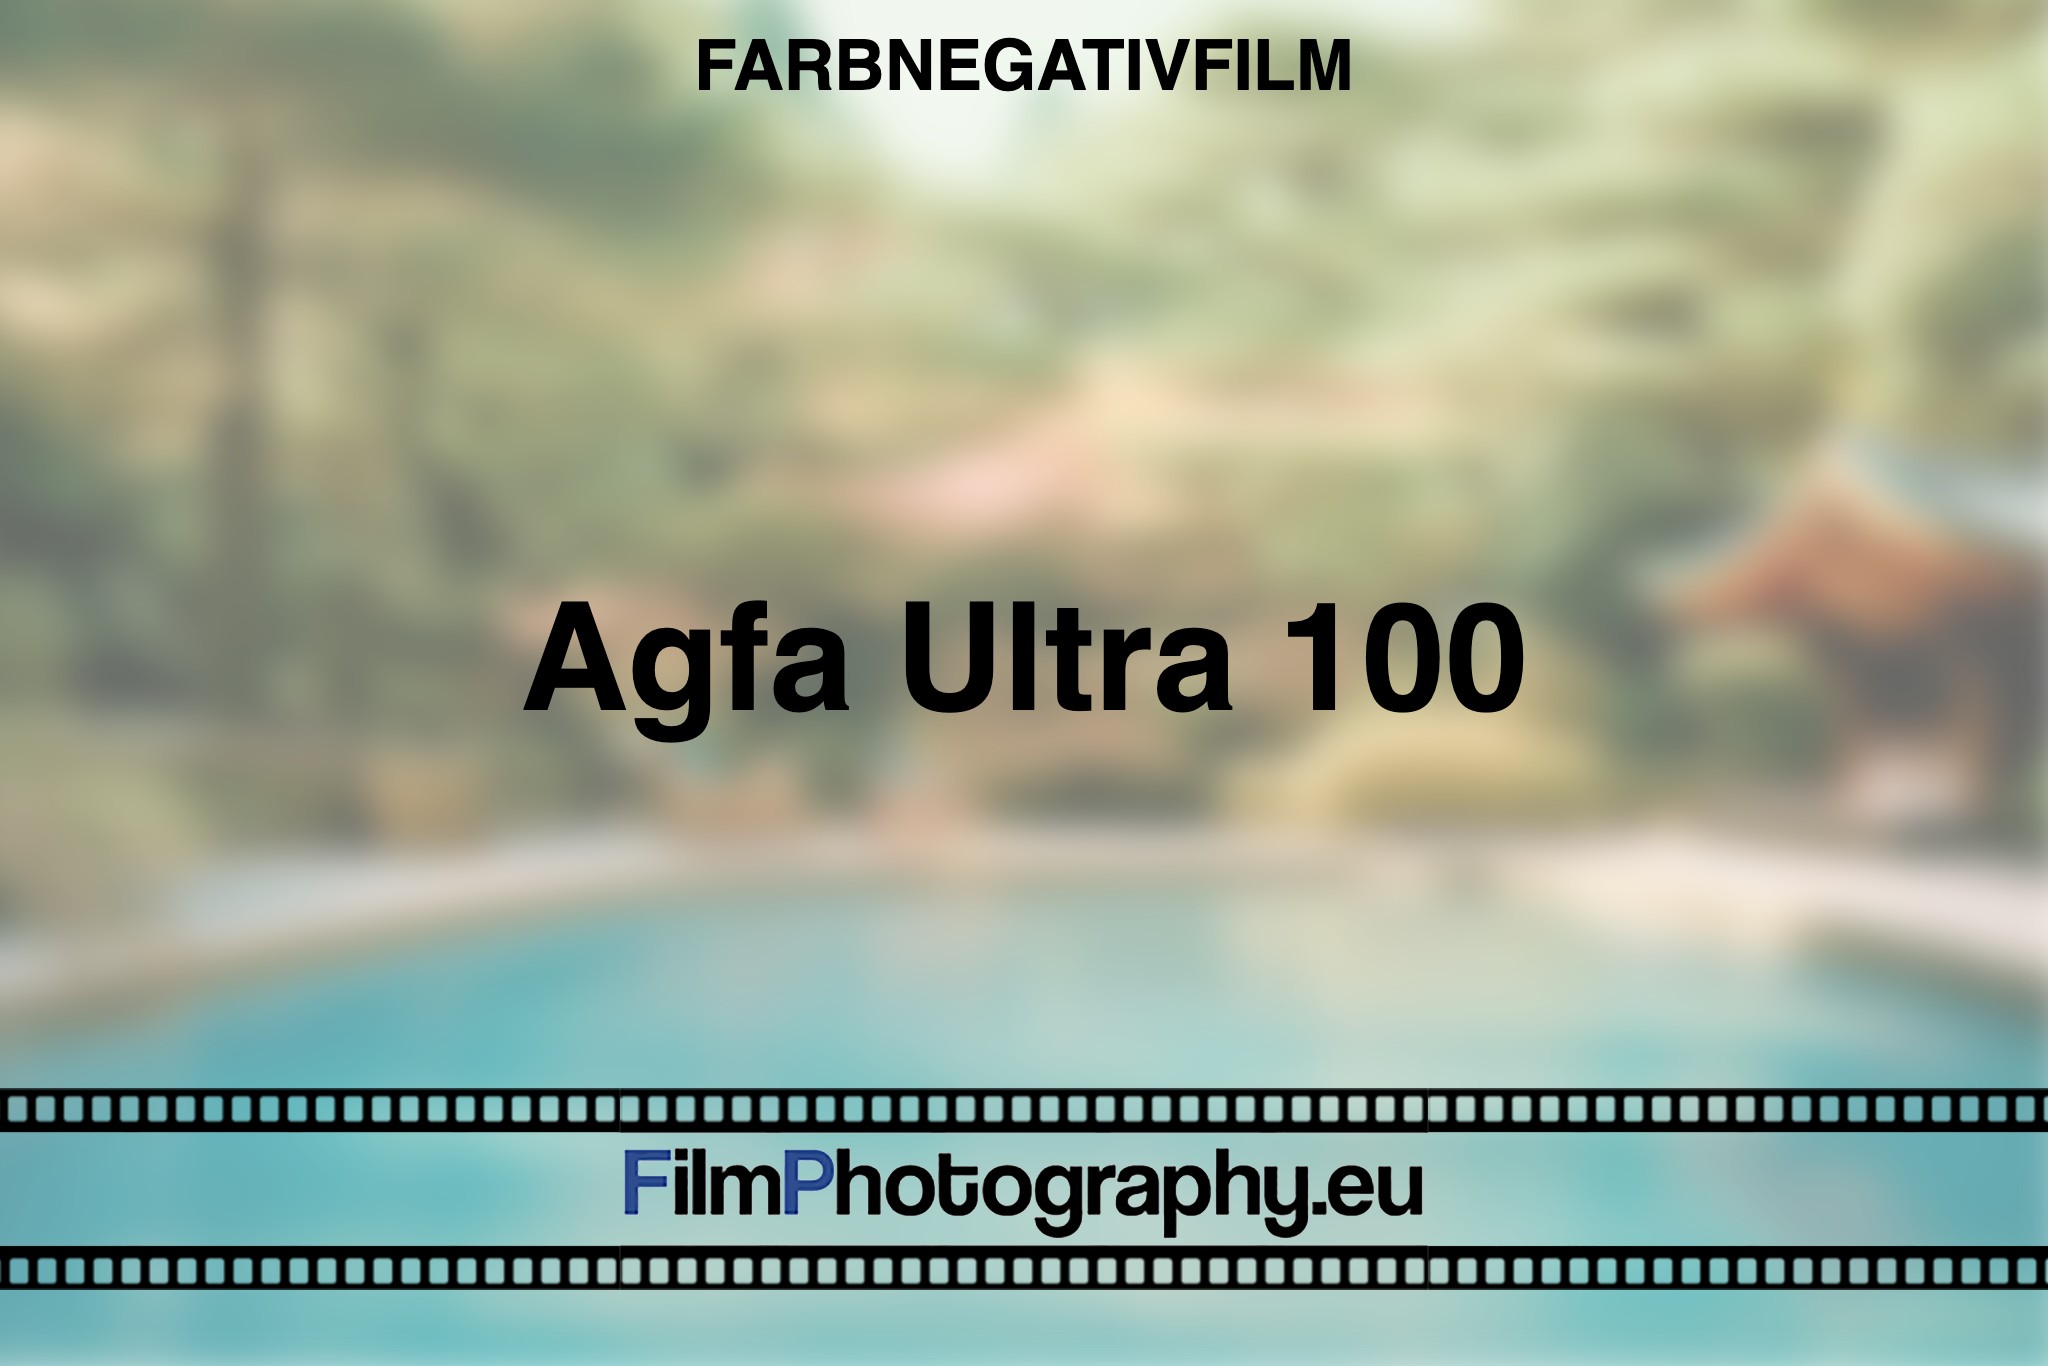 agfa-ultra-100-farbnegativfilm-bnv